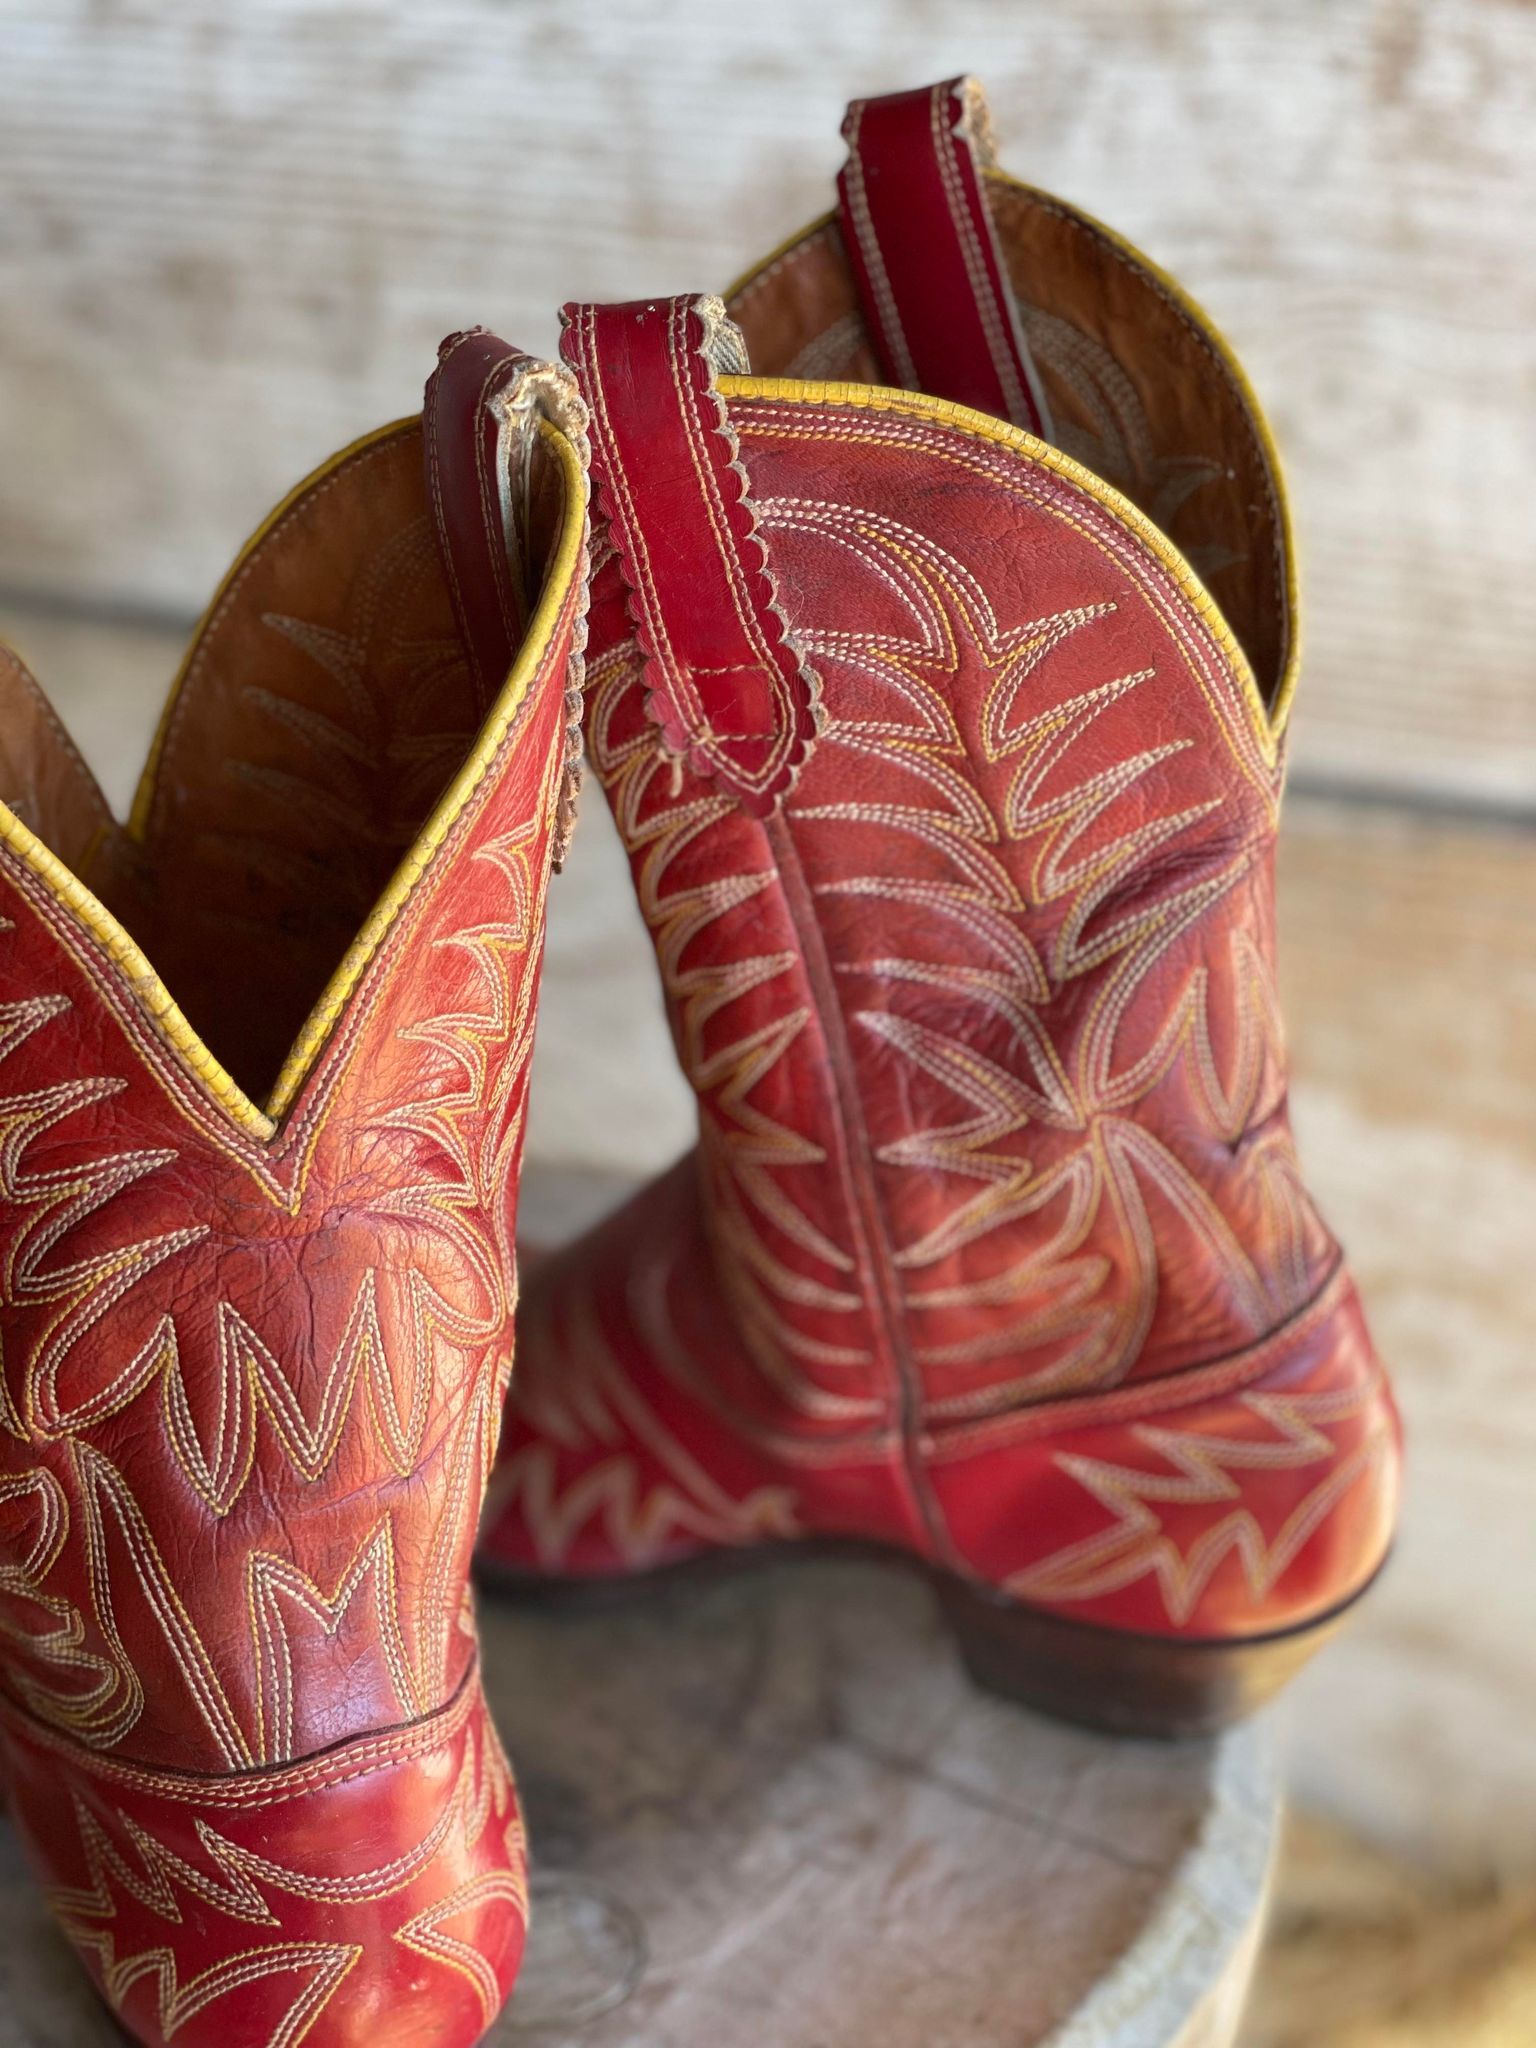 Vintage Ladies Cowboy Boots (ladies 6)